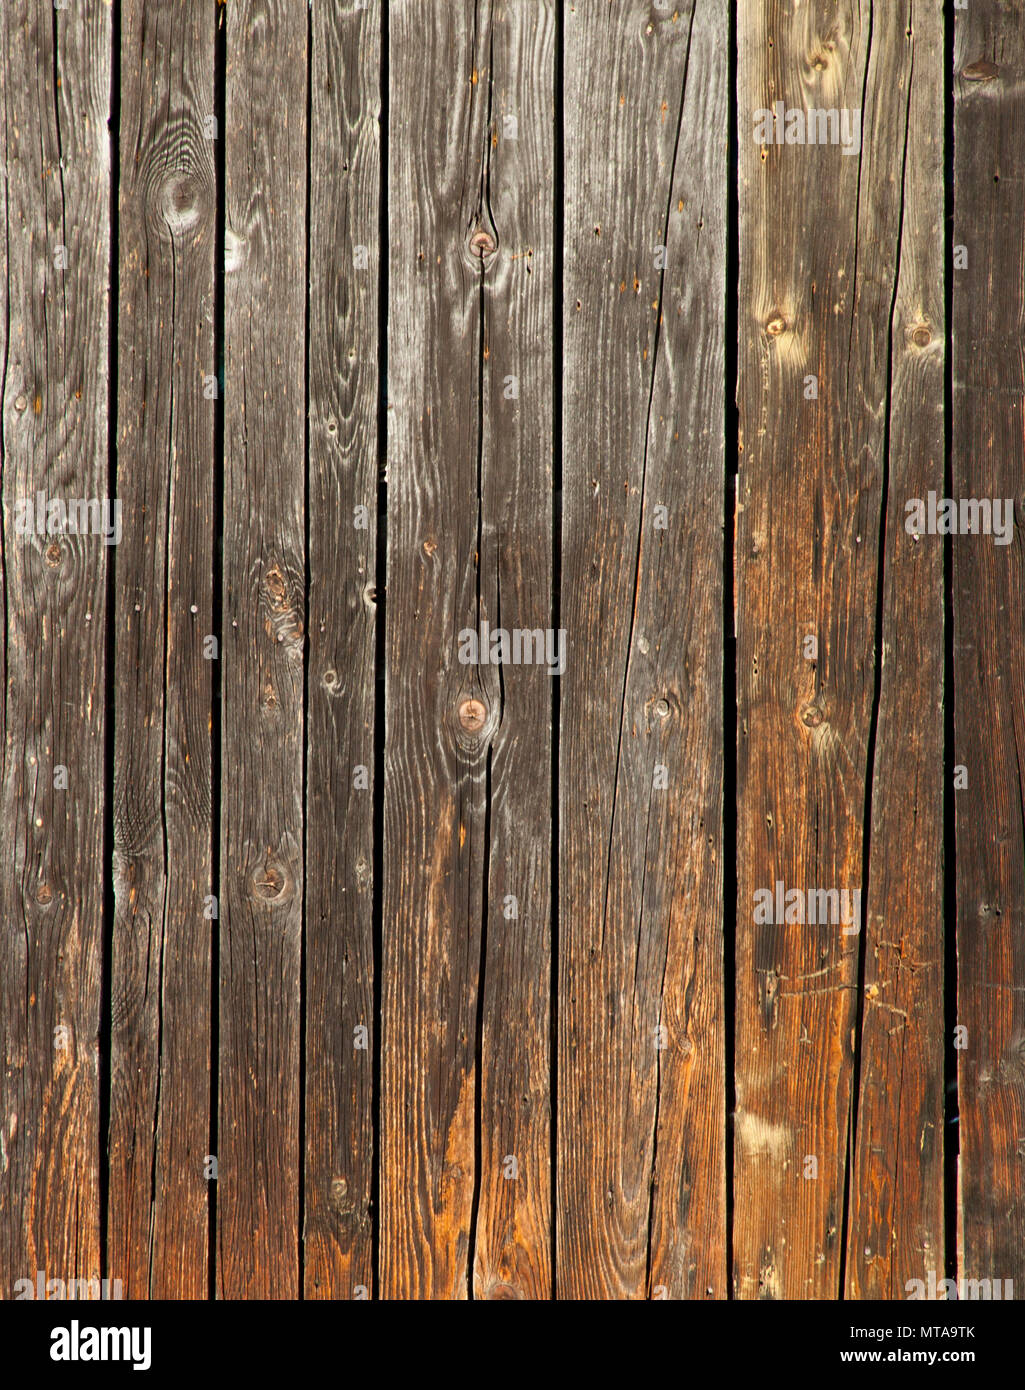 Tablones de madera vieja, perfecto telón de fondo para su idea o proyecto Foto de stock